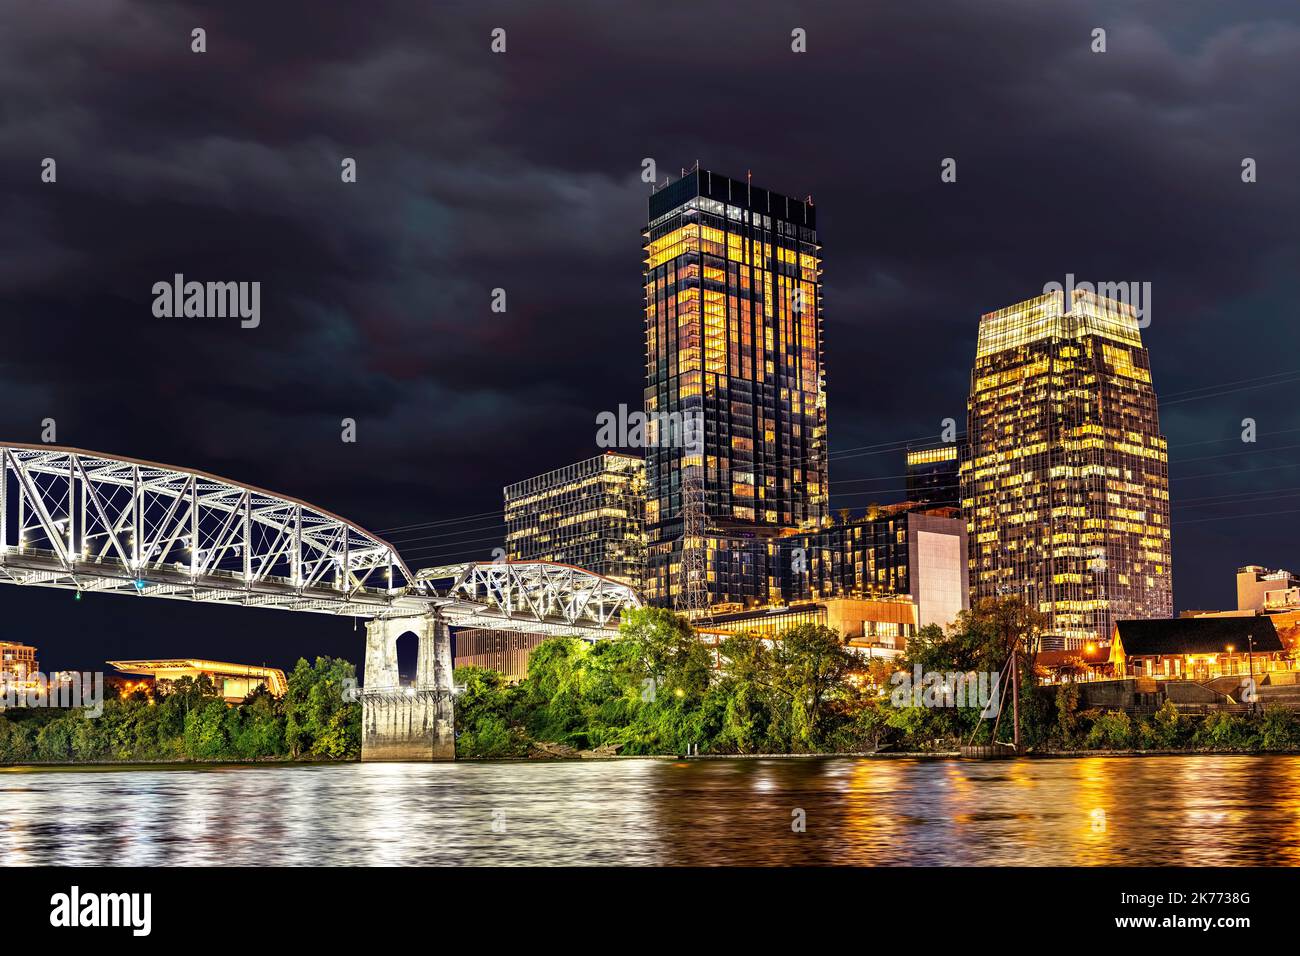 Bellissimo mago del famoso ponte pedonale del centro di Nashville sul lungofiume che mostra la storica attrazione turistica incorniciata contro il cielo nuvoloso a n Foto Stock